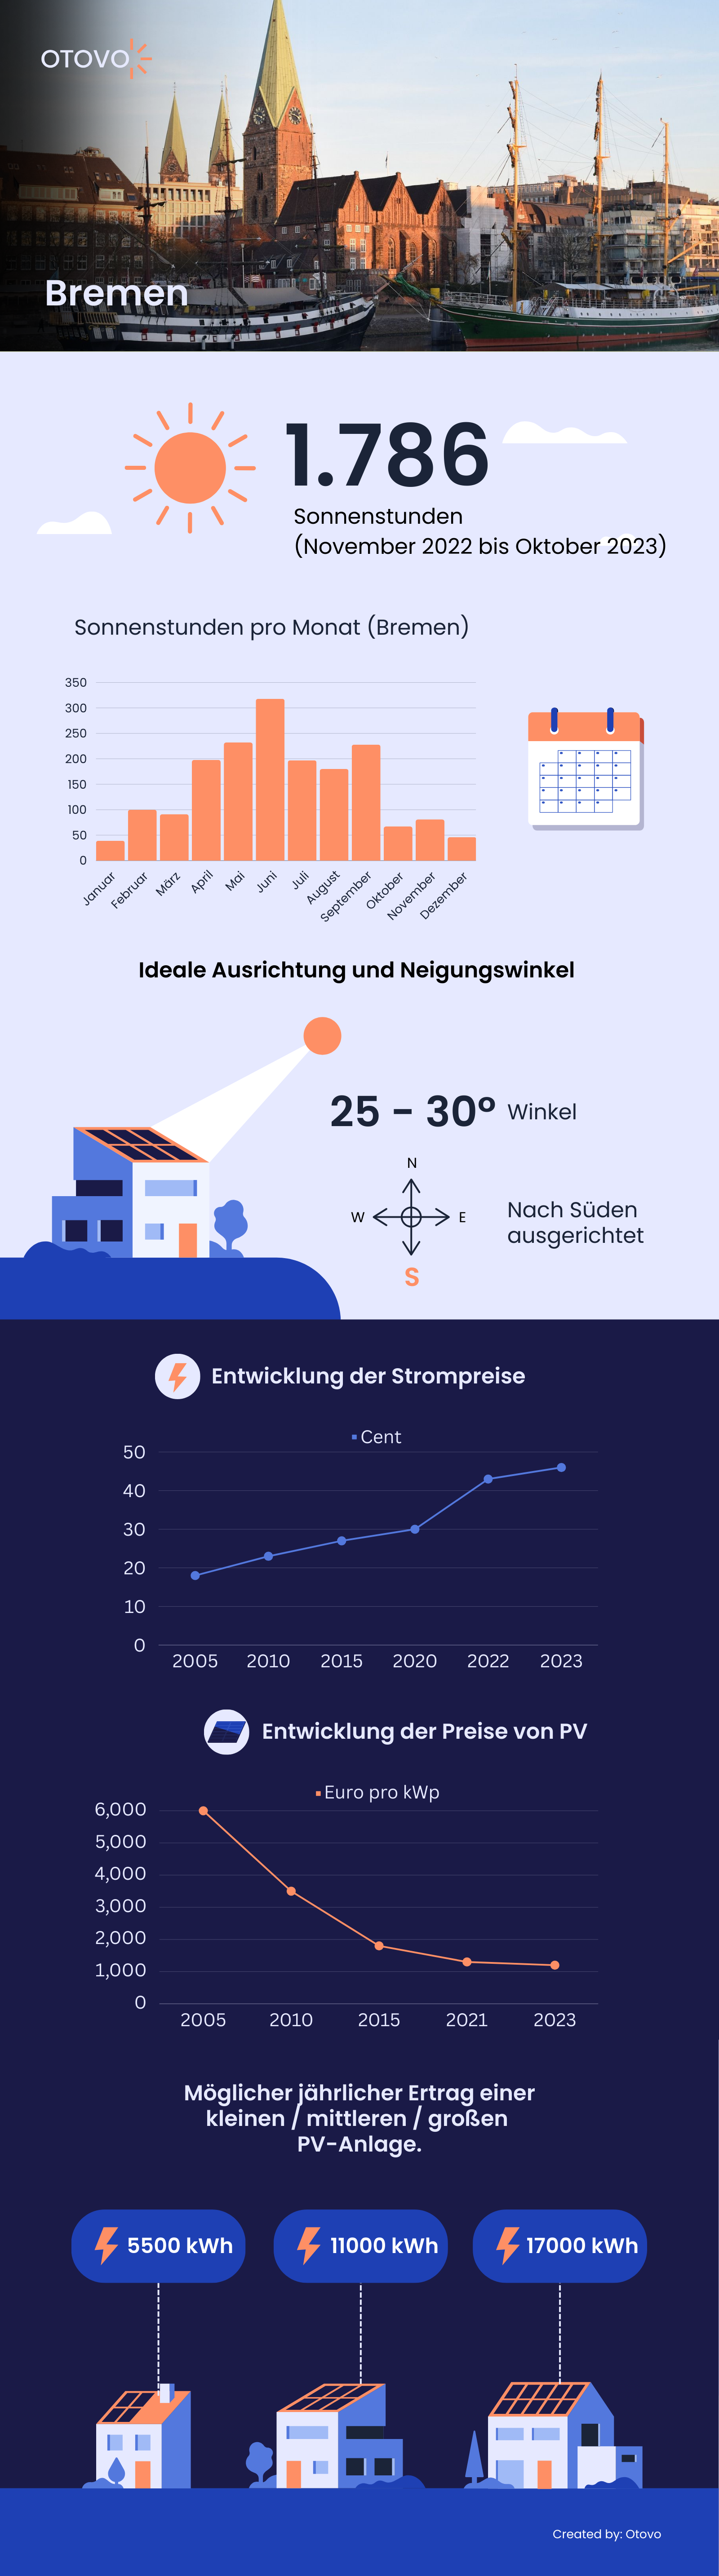 Infografik zu Solaranlagen in Bremen